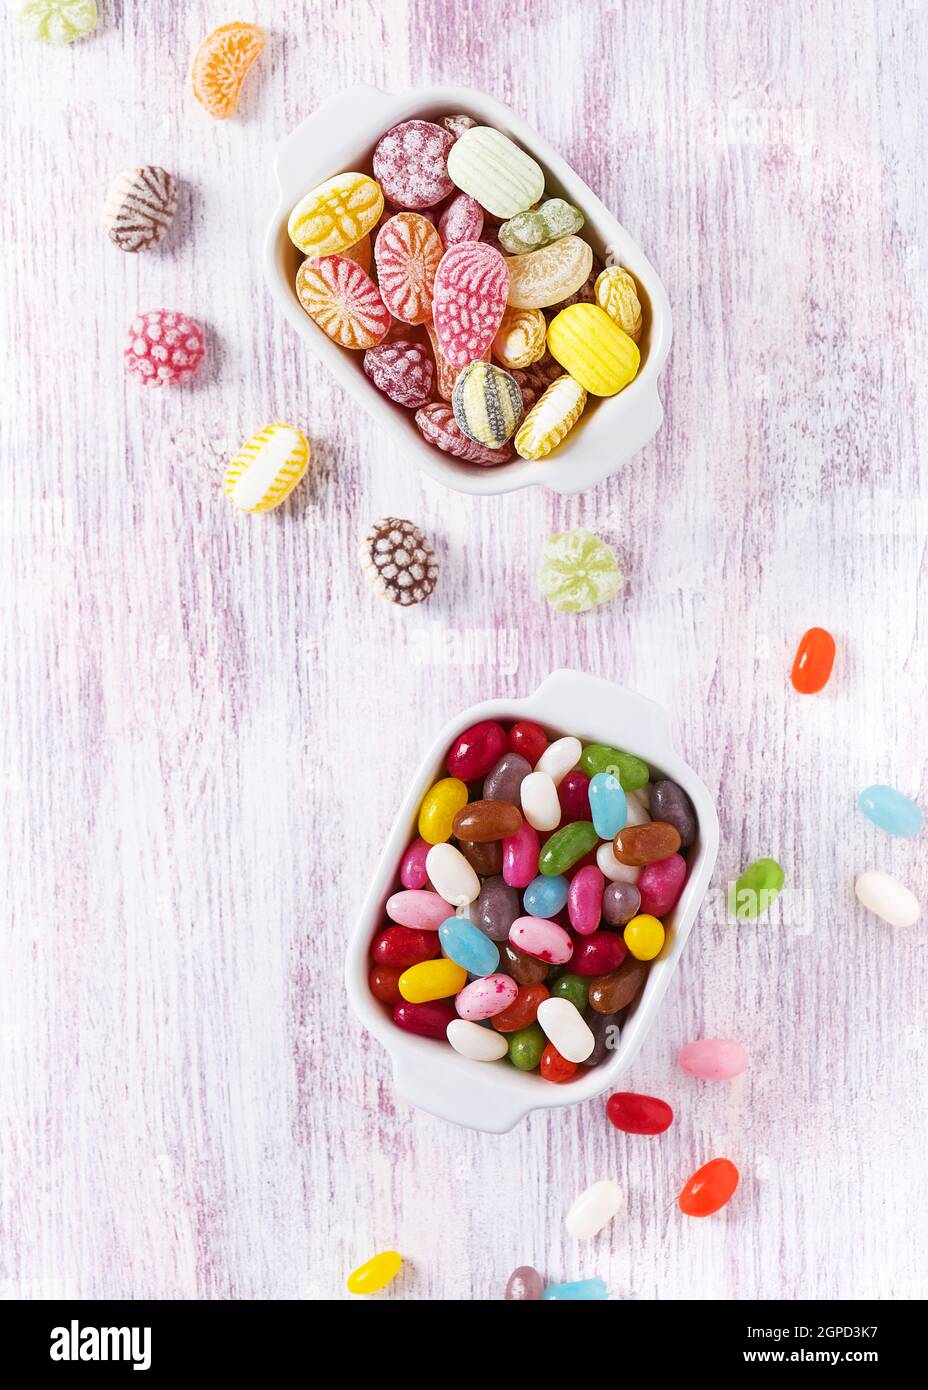 Vue de dessus des bonbons colorés et des jelly beans dans deux bols en céramique blanche. Concept de nourriture douce. Copier l'espace. Banque D'Images